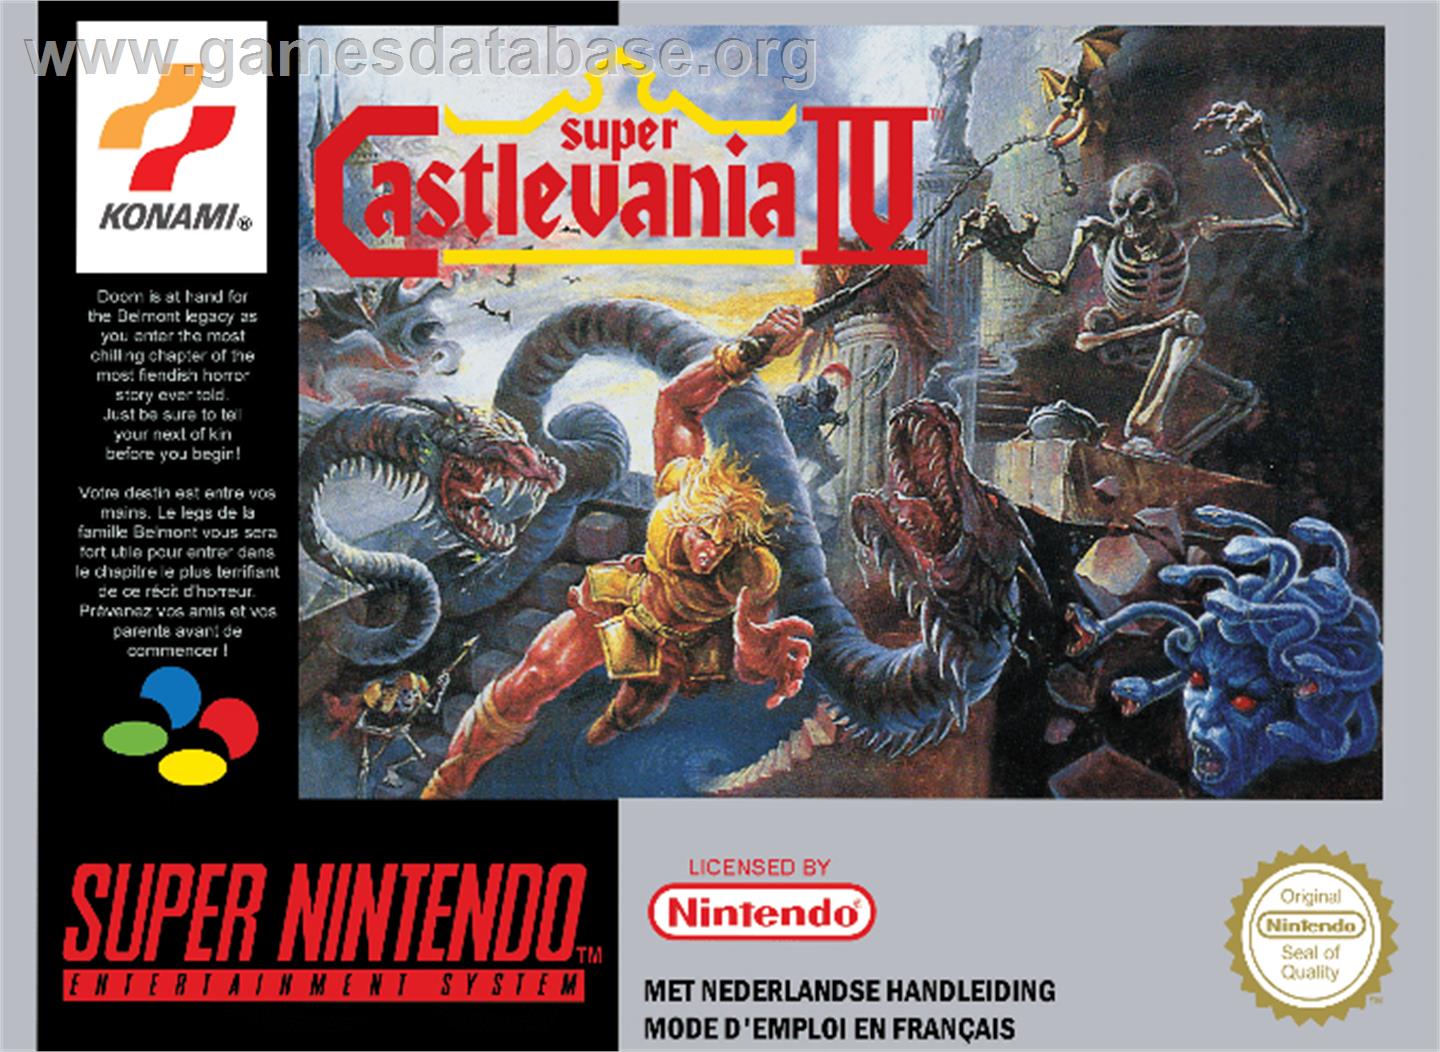 Super Castlevania IV - Nintendo SNES - Artwork - Box